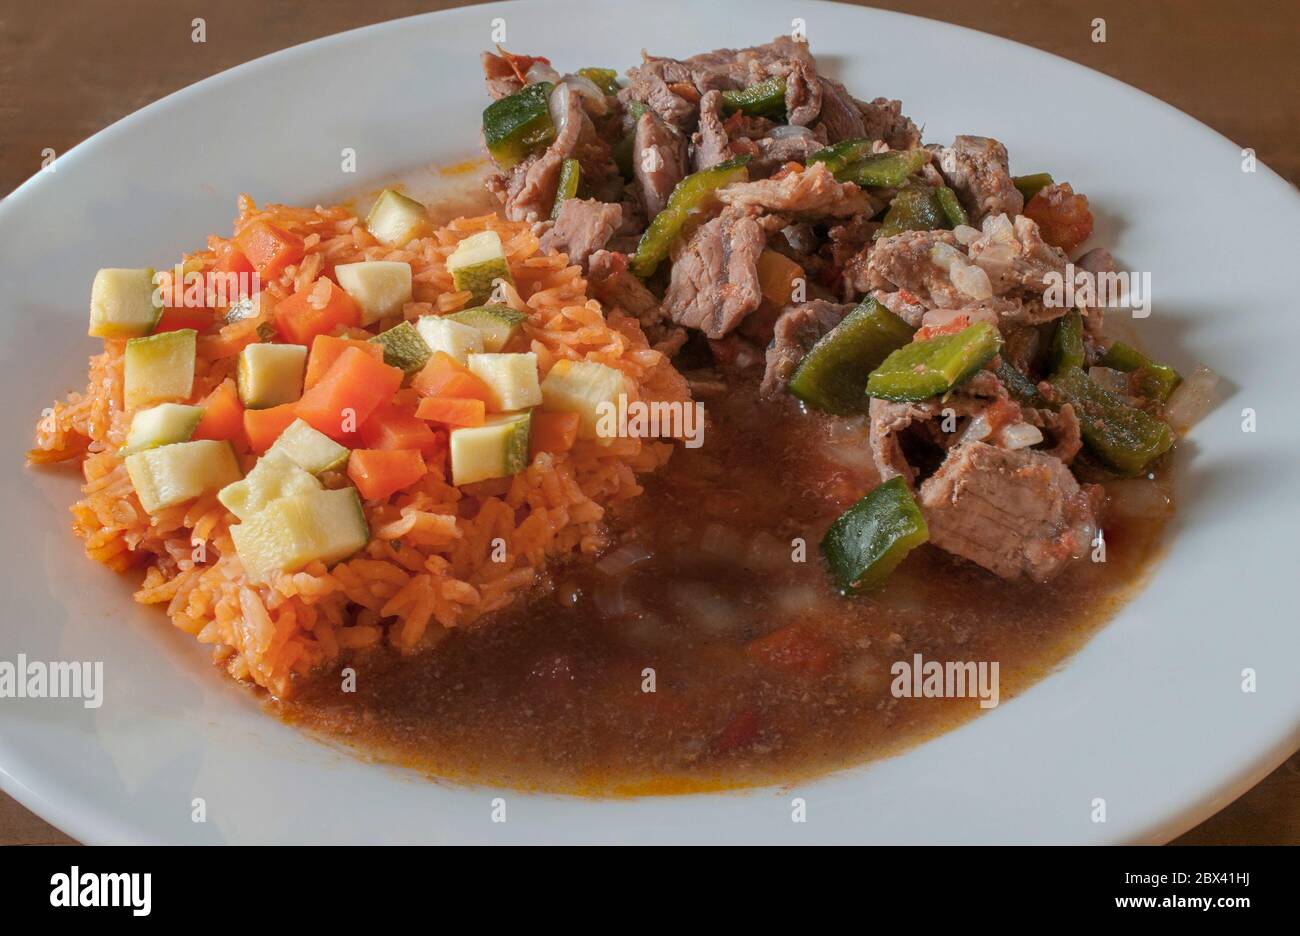 Steak de bœuf ranchero de cuisine mexicaine avec du chili et du riz Mexica sur le côté avec des légumes sur le plat épicé de riz steak de bœuf ranch Banque D'Images